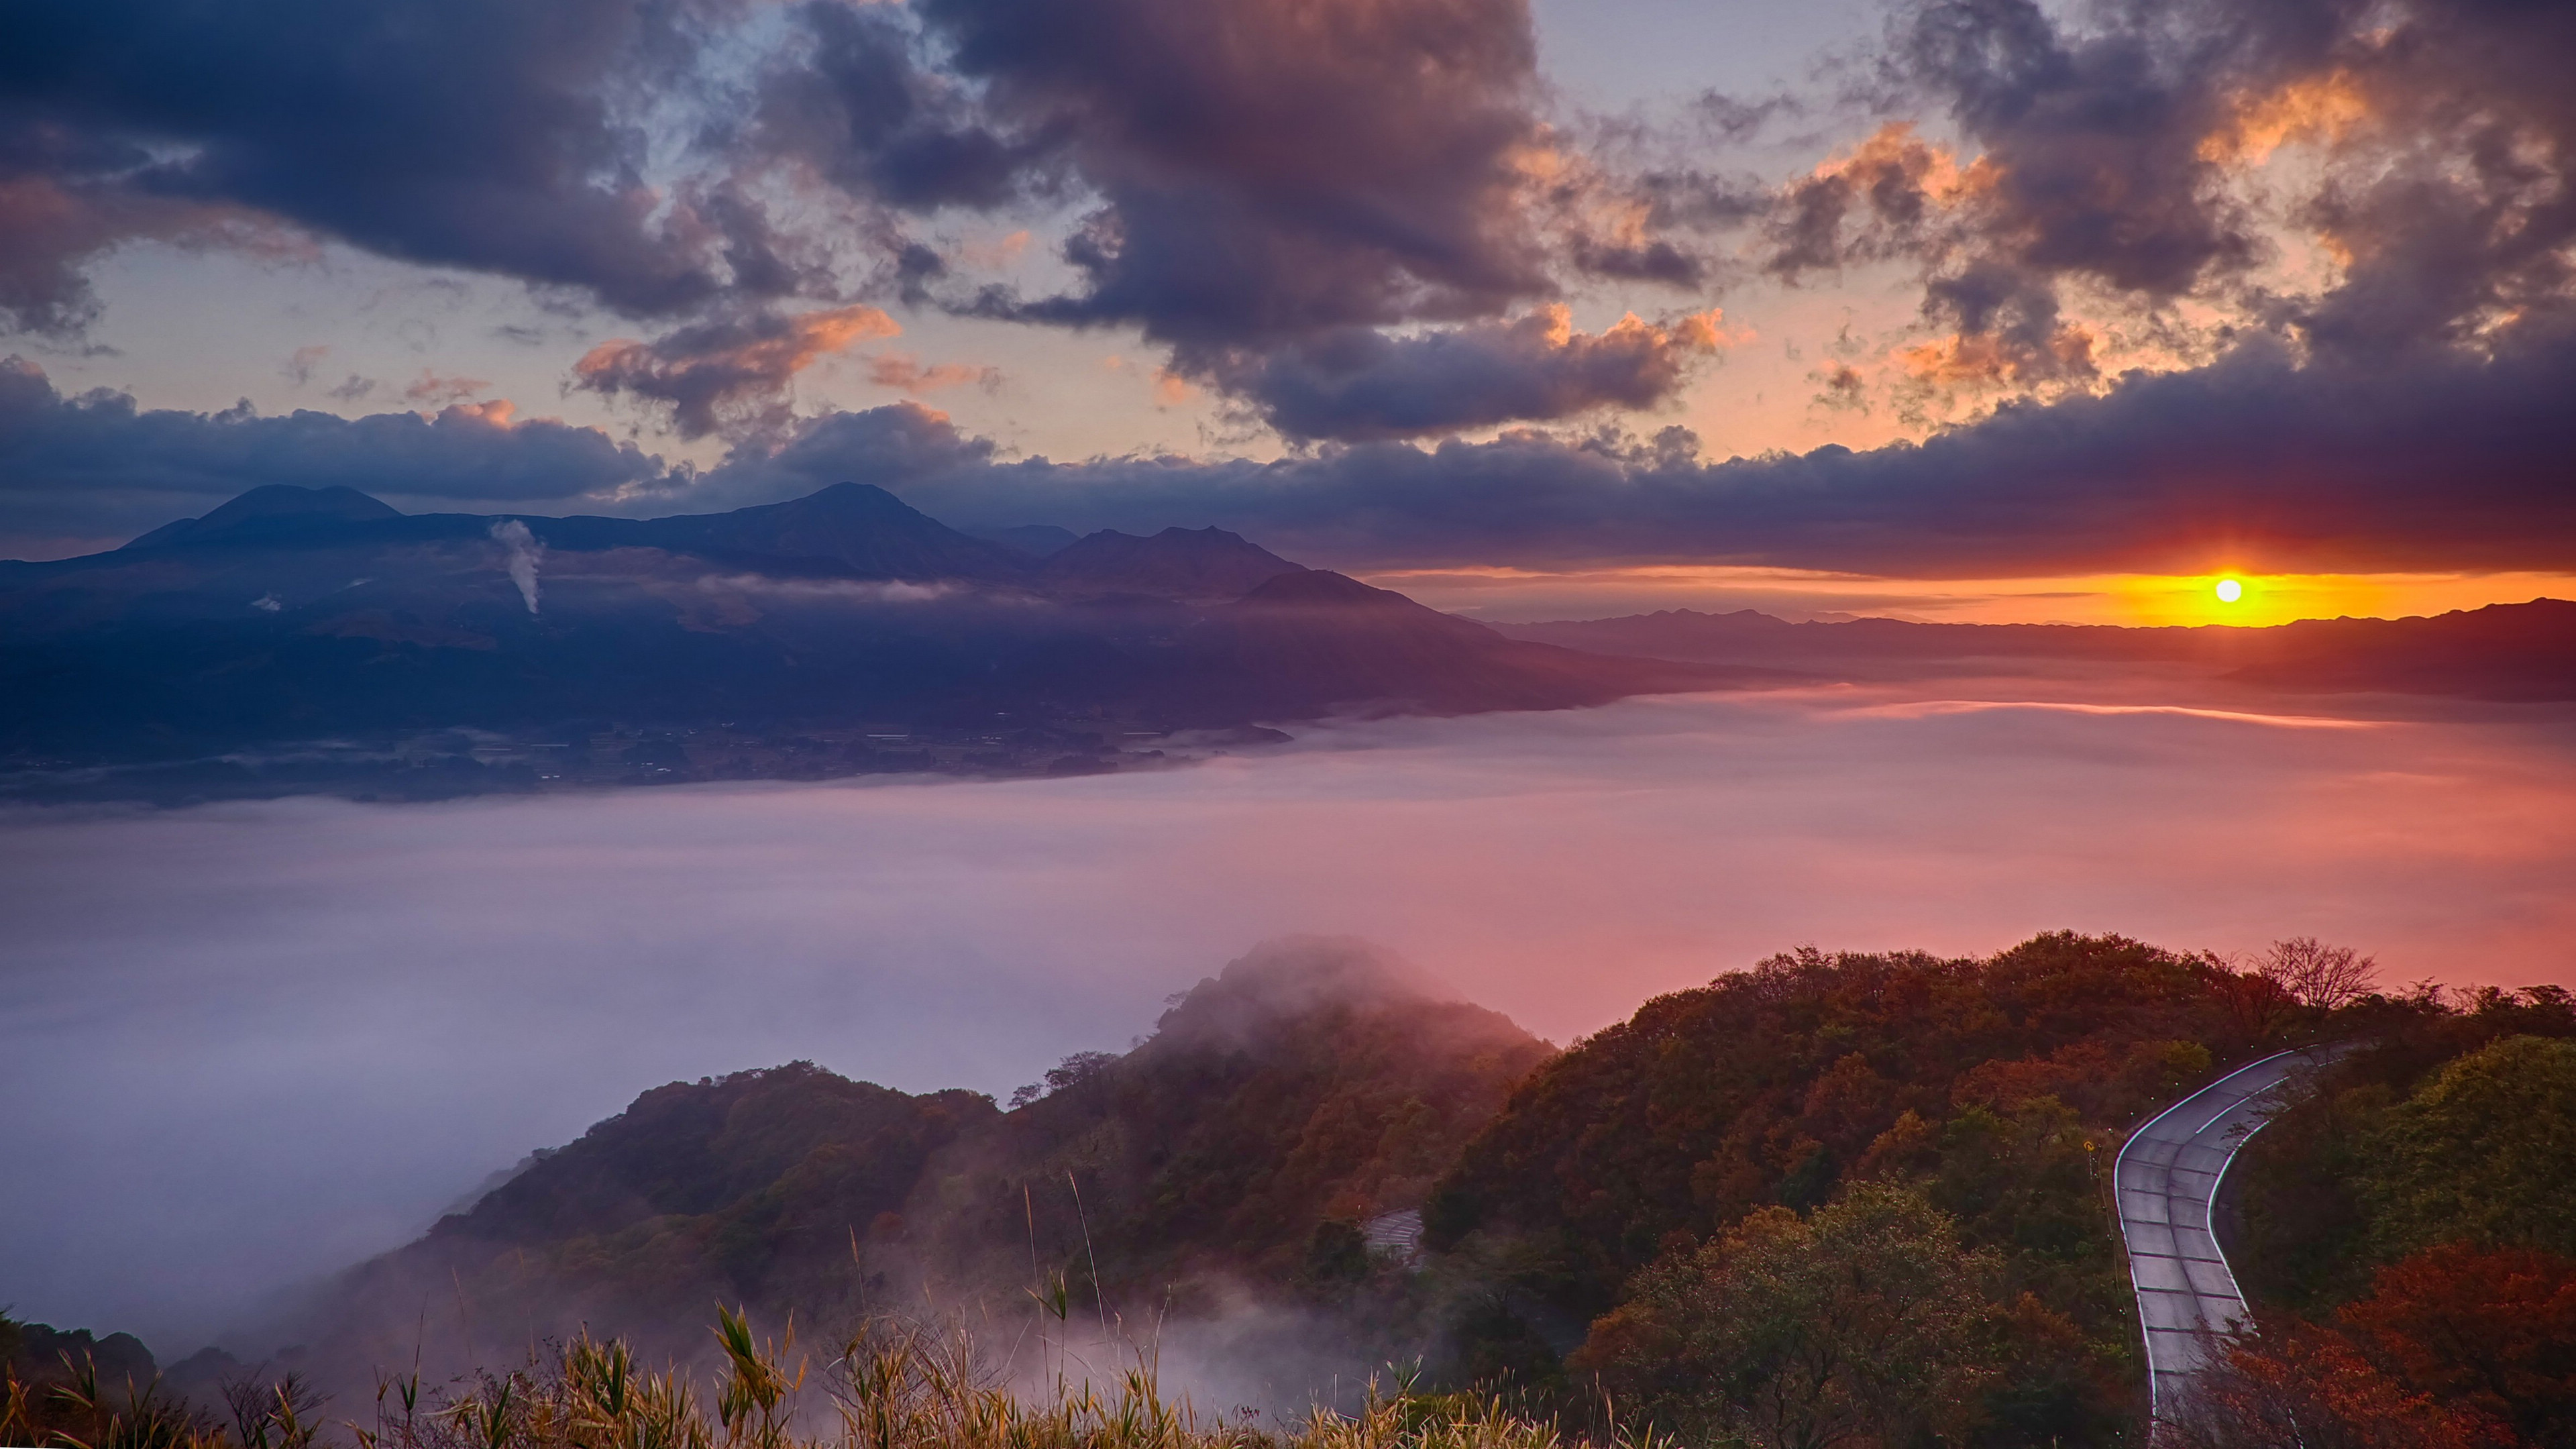 日本九州岛熊本风景图片桌面壁纸